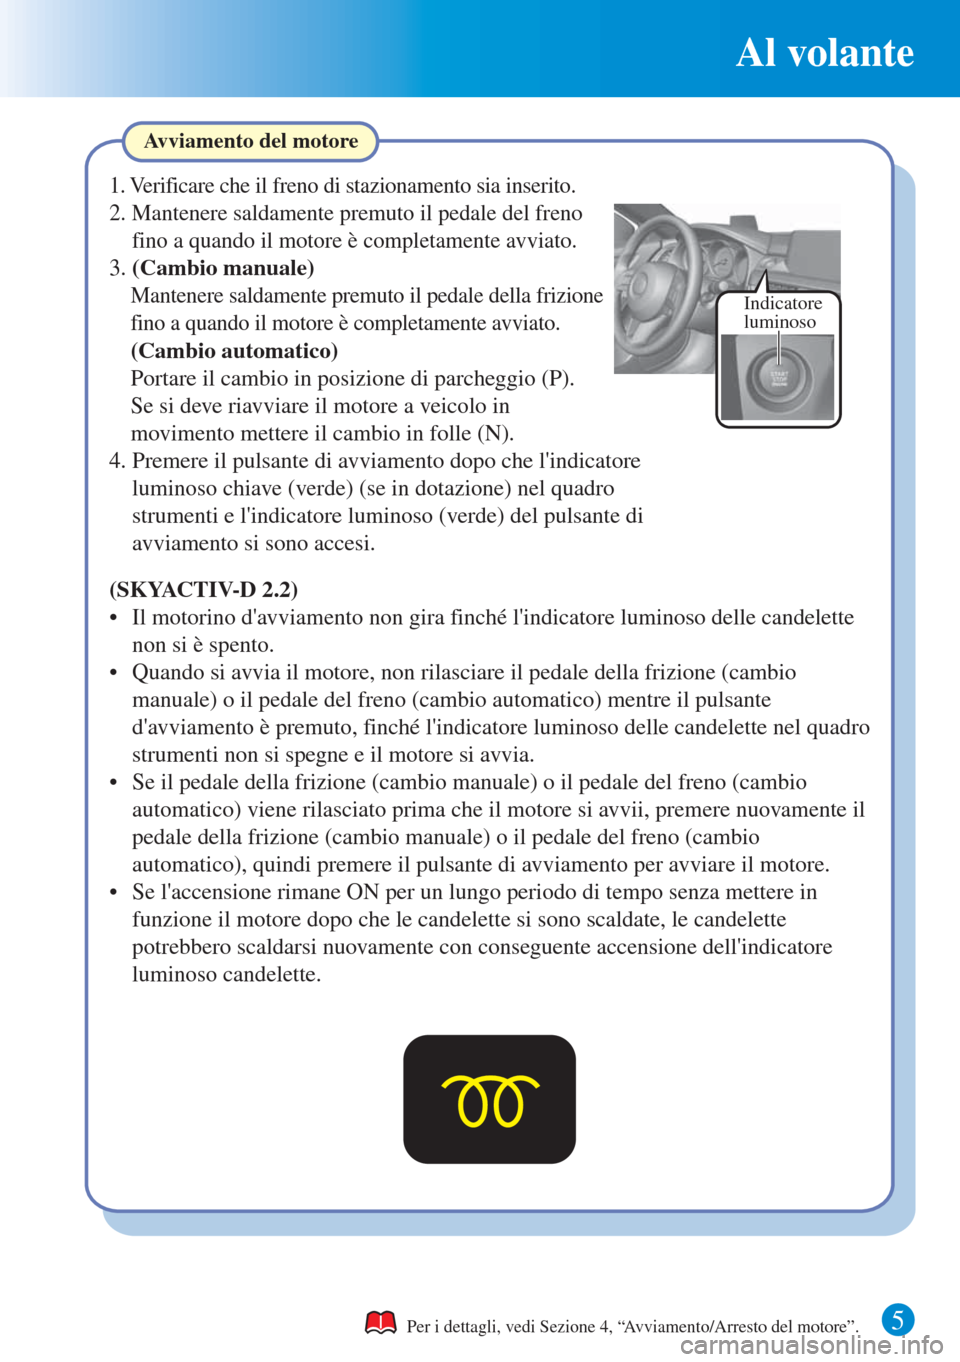 MAZDA MODEL 6 2015  Guida Rapida (in Italian) Al volante
5
Indicatore 
luminoso
Avviamento del motore
Per i dettagli, vedi Sezione 4, “Avviamento/Arresto del motore”.
(SKYACTIV-D 2.2)
•  Il motorino davviamento non gira finché lindicator